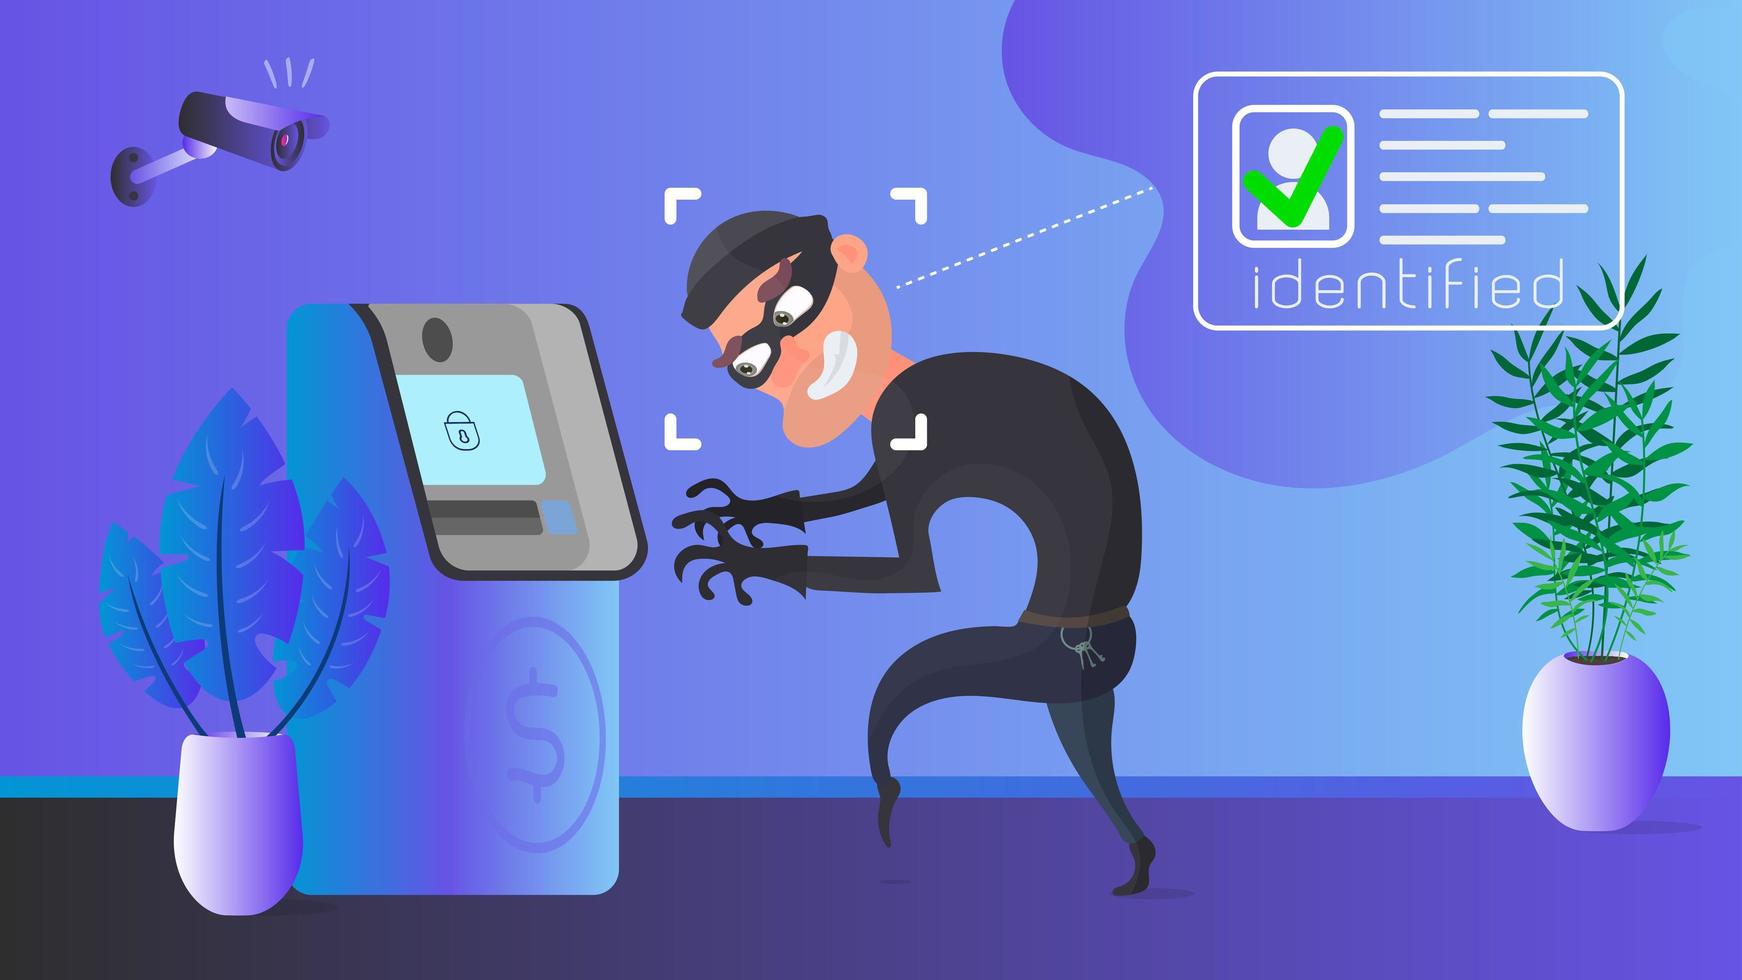 um ladrão está roubando um caixa eletrônico. identificação de ladrão mascarado. conceito de segurança. vetor